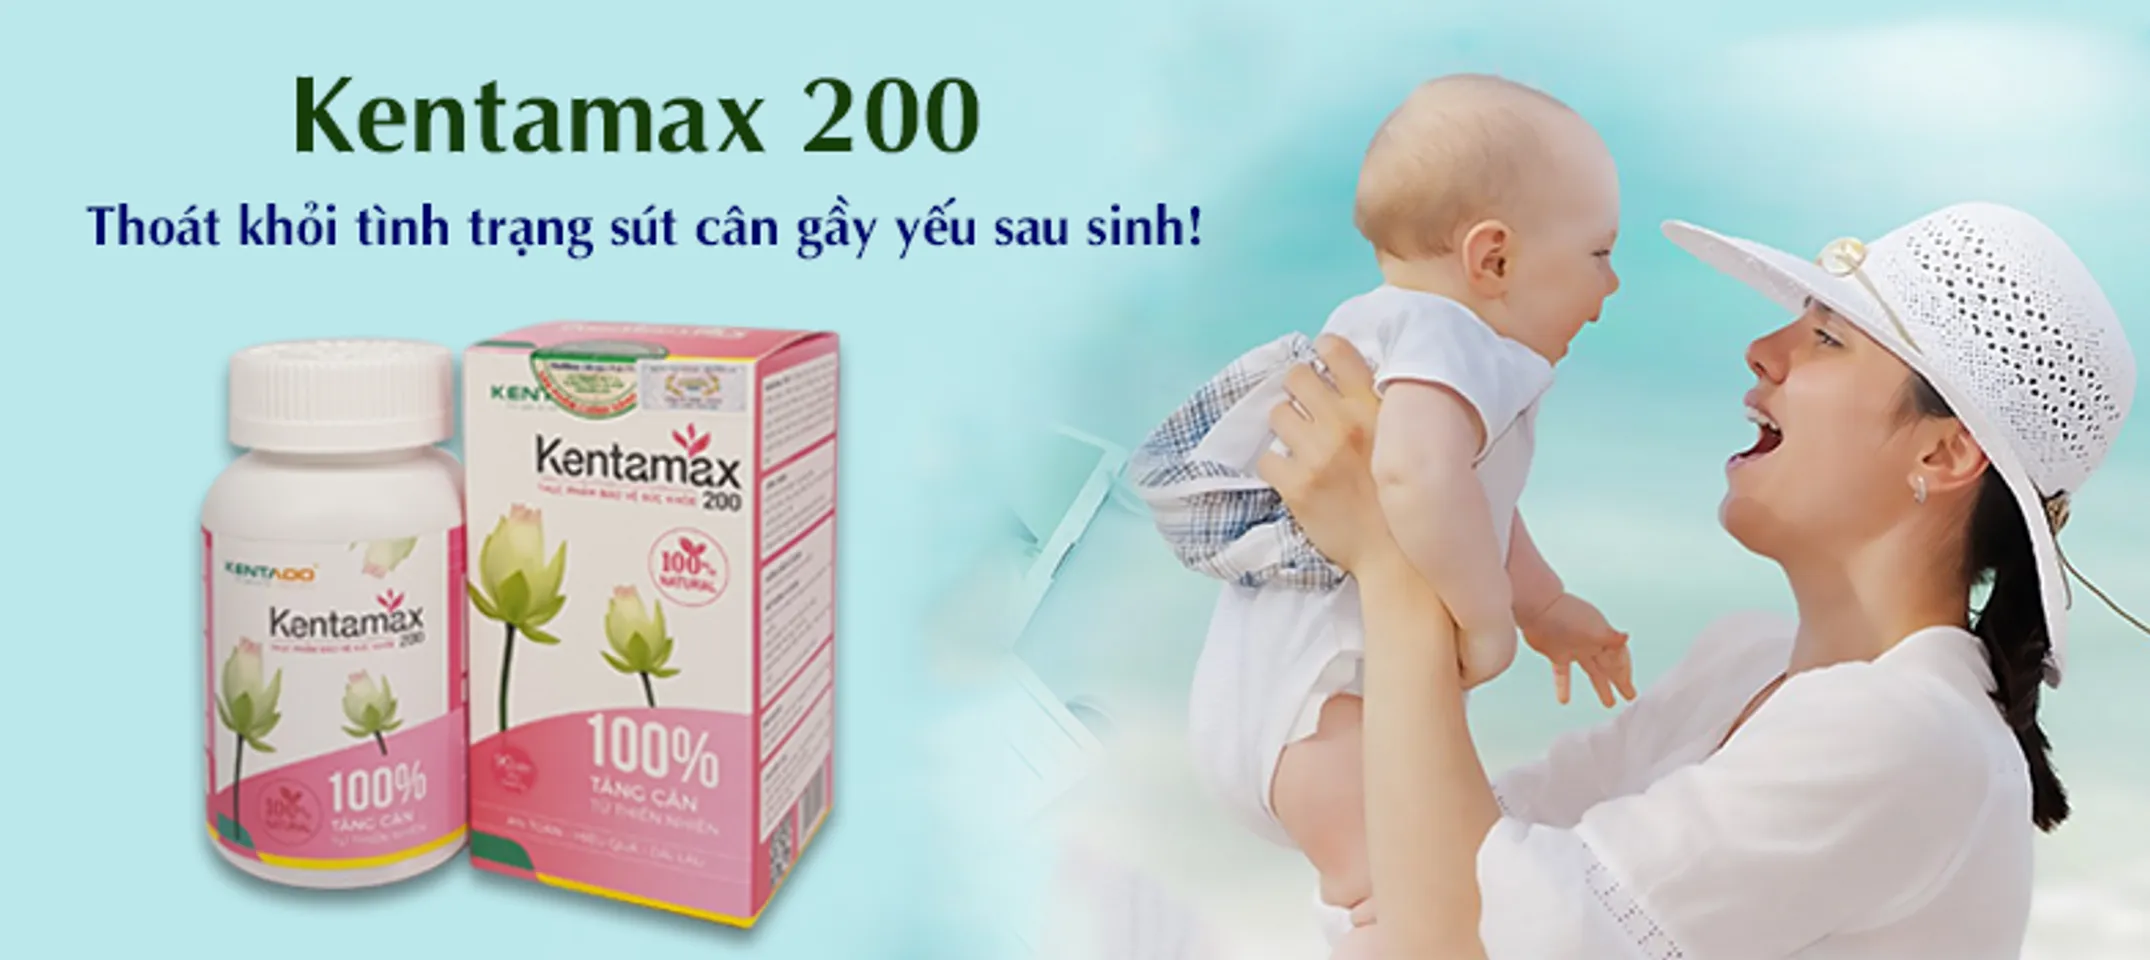 Kentamax 200 giúp lưu thông khí huyết thúc đẩy quá trình trao đổi chất trong cơ thể giúp bạn tăng cân hiệu quả